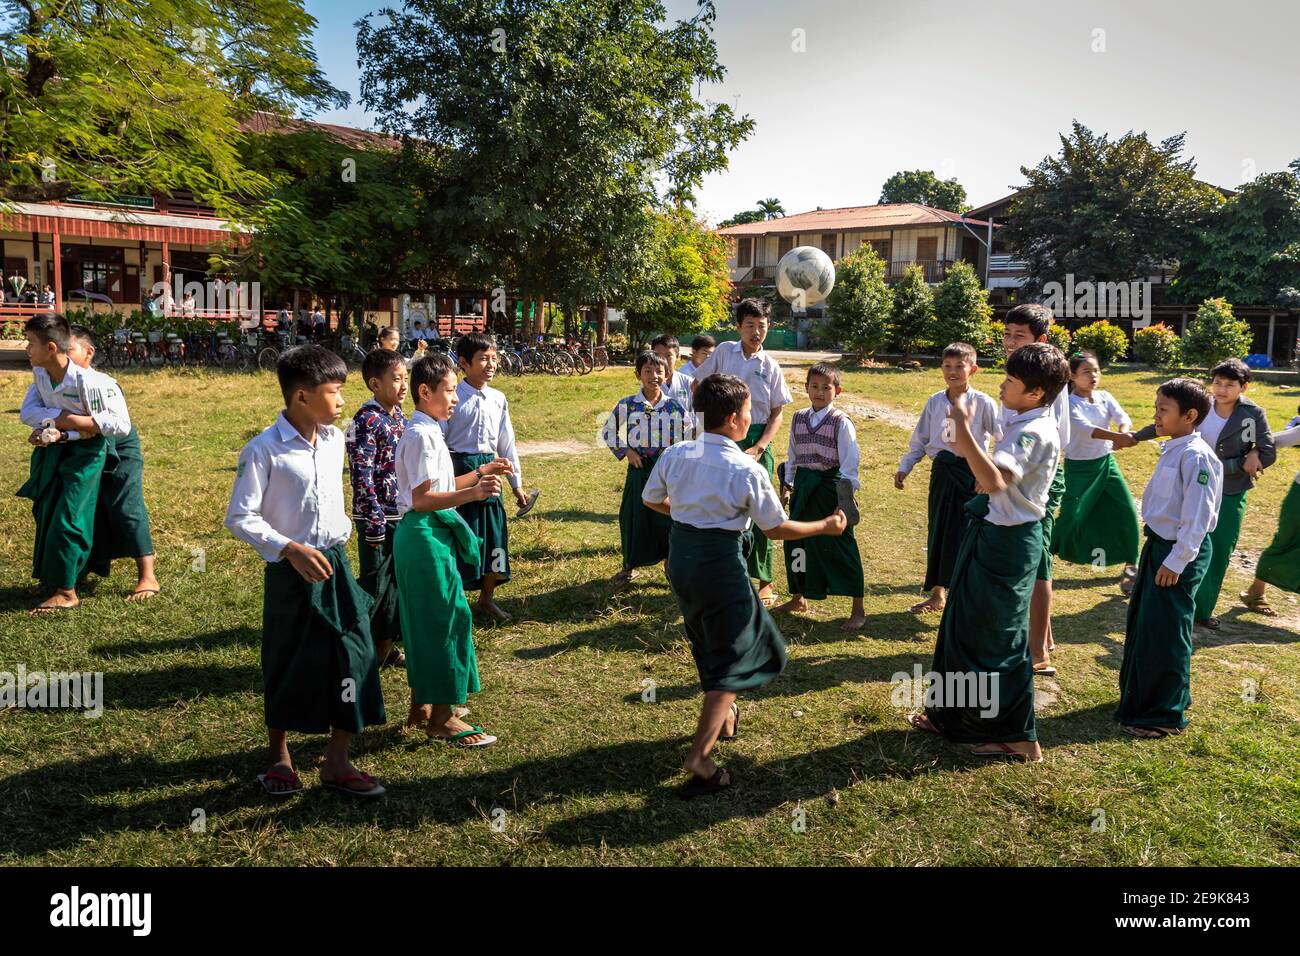 Les orphelins vivant dans l'orphelinat du Shatapru Education Boarder à Myikyina, dans le nord du Myanmar, suivent des cours dans l'école publique. Banque D'Images